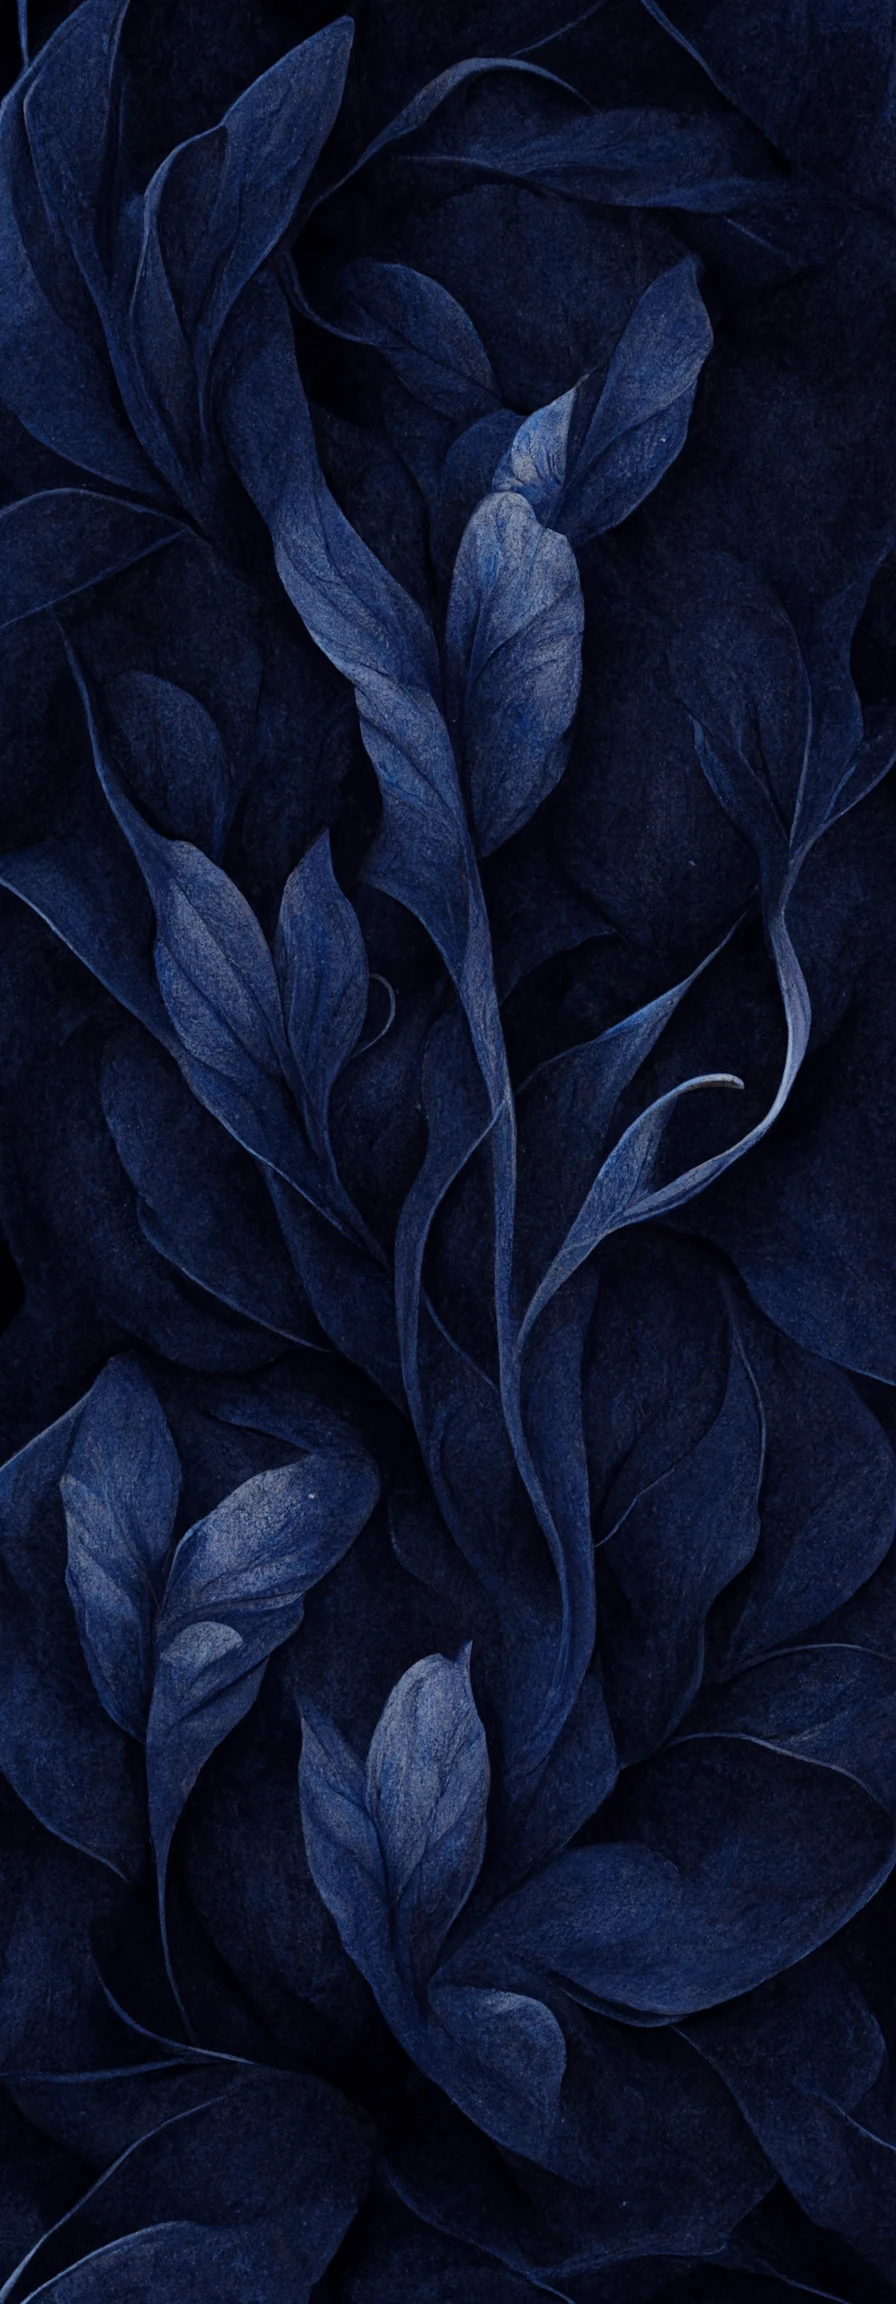 极光之夜 - 深蓝色纸上的洛可可分形书法装饰